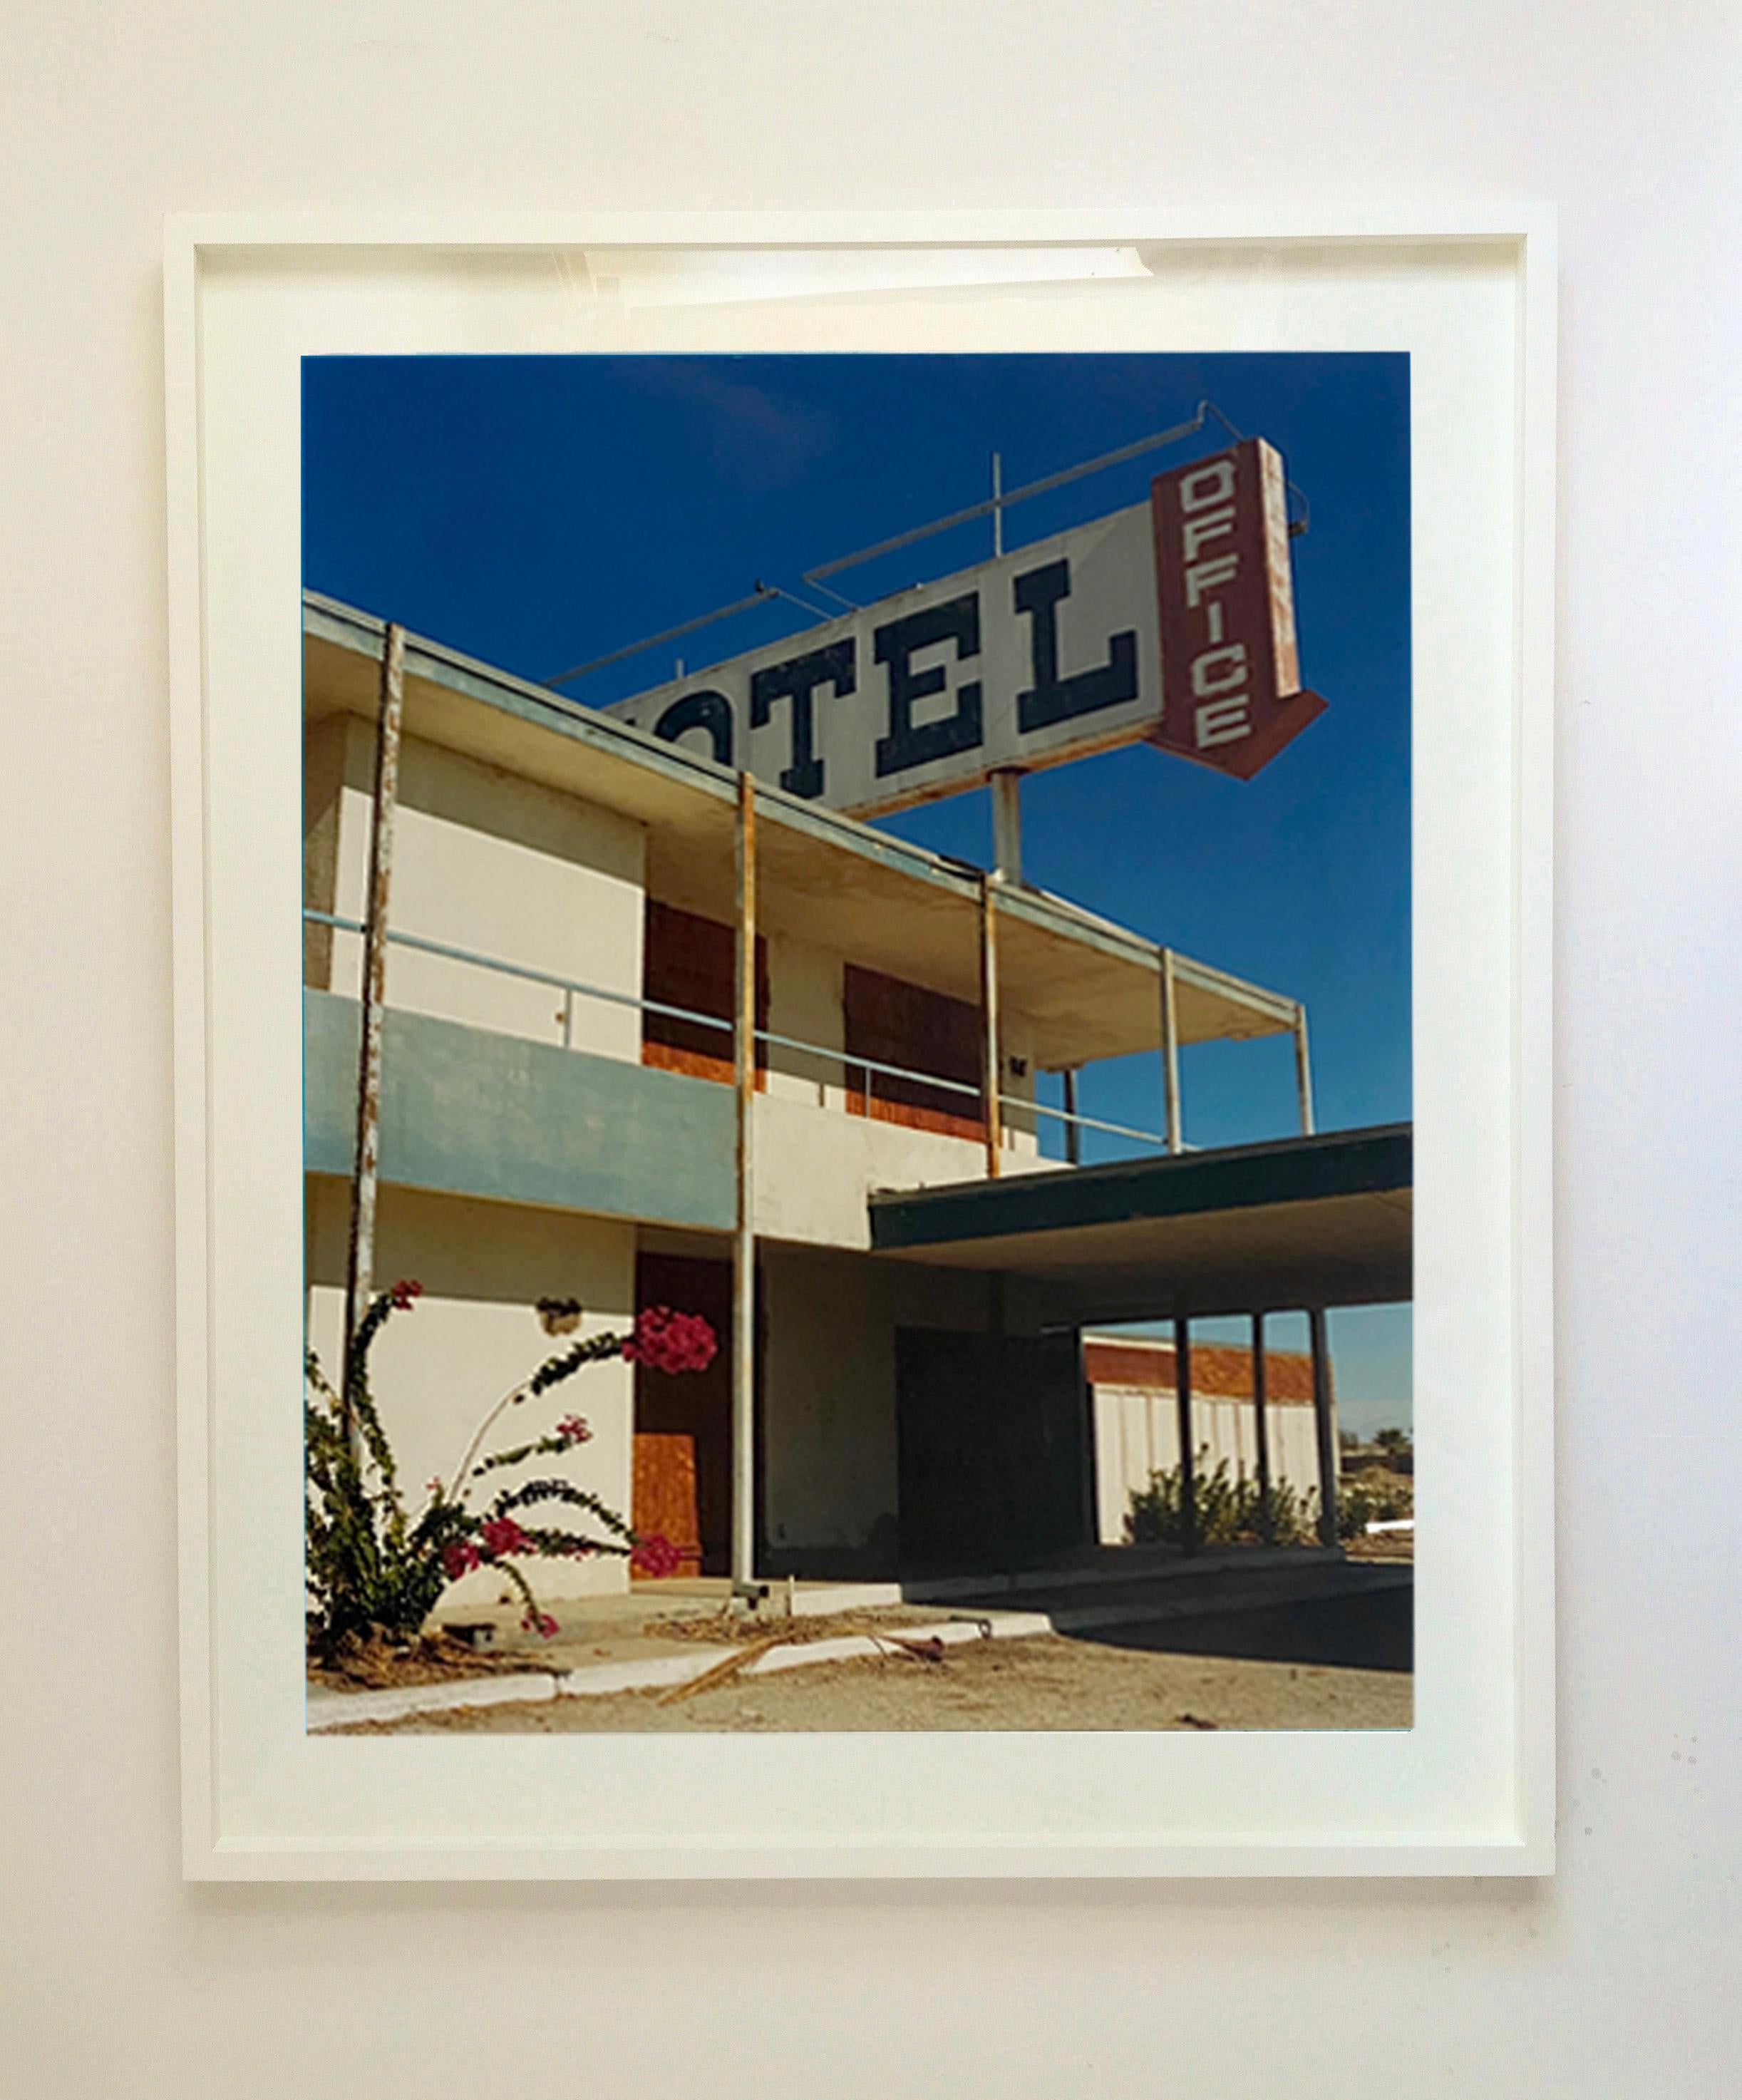 North Shore Motel Office II, Salton Sea, Kalifornien – architektonisches Farbfoto (Konzeptionell), Photograph, von Richard Heeps